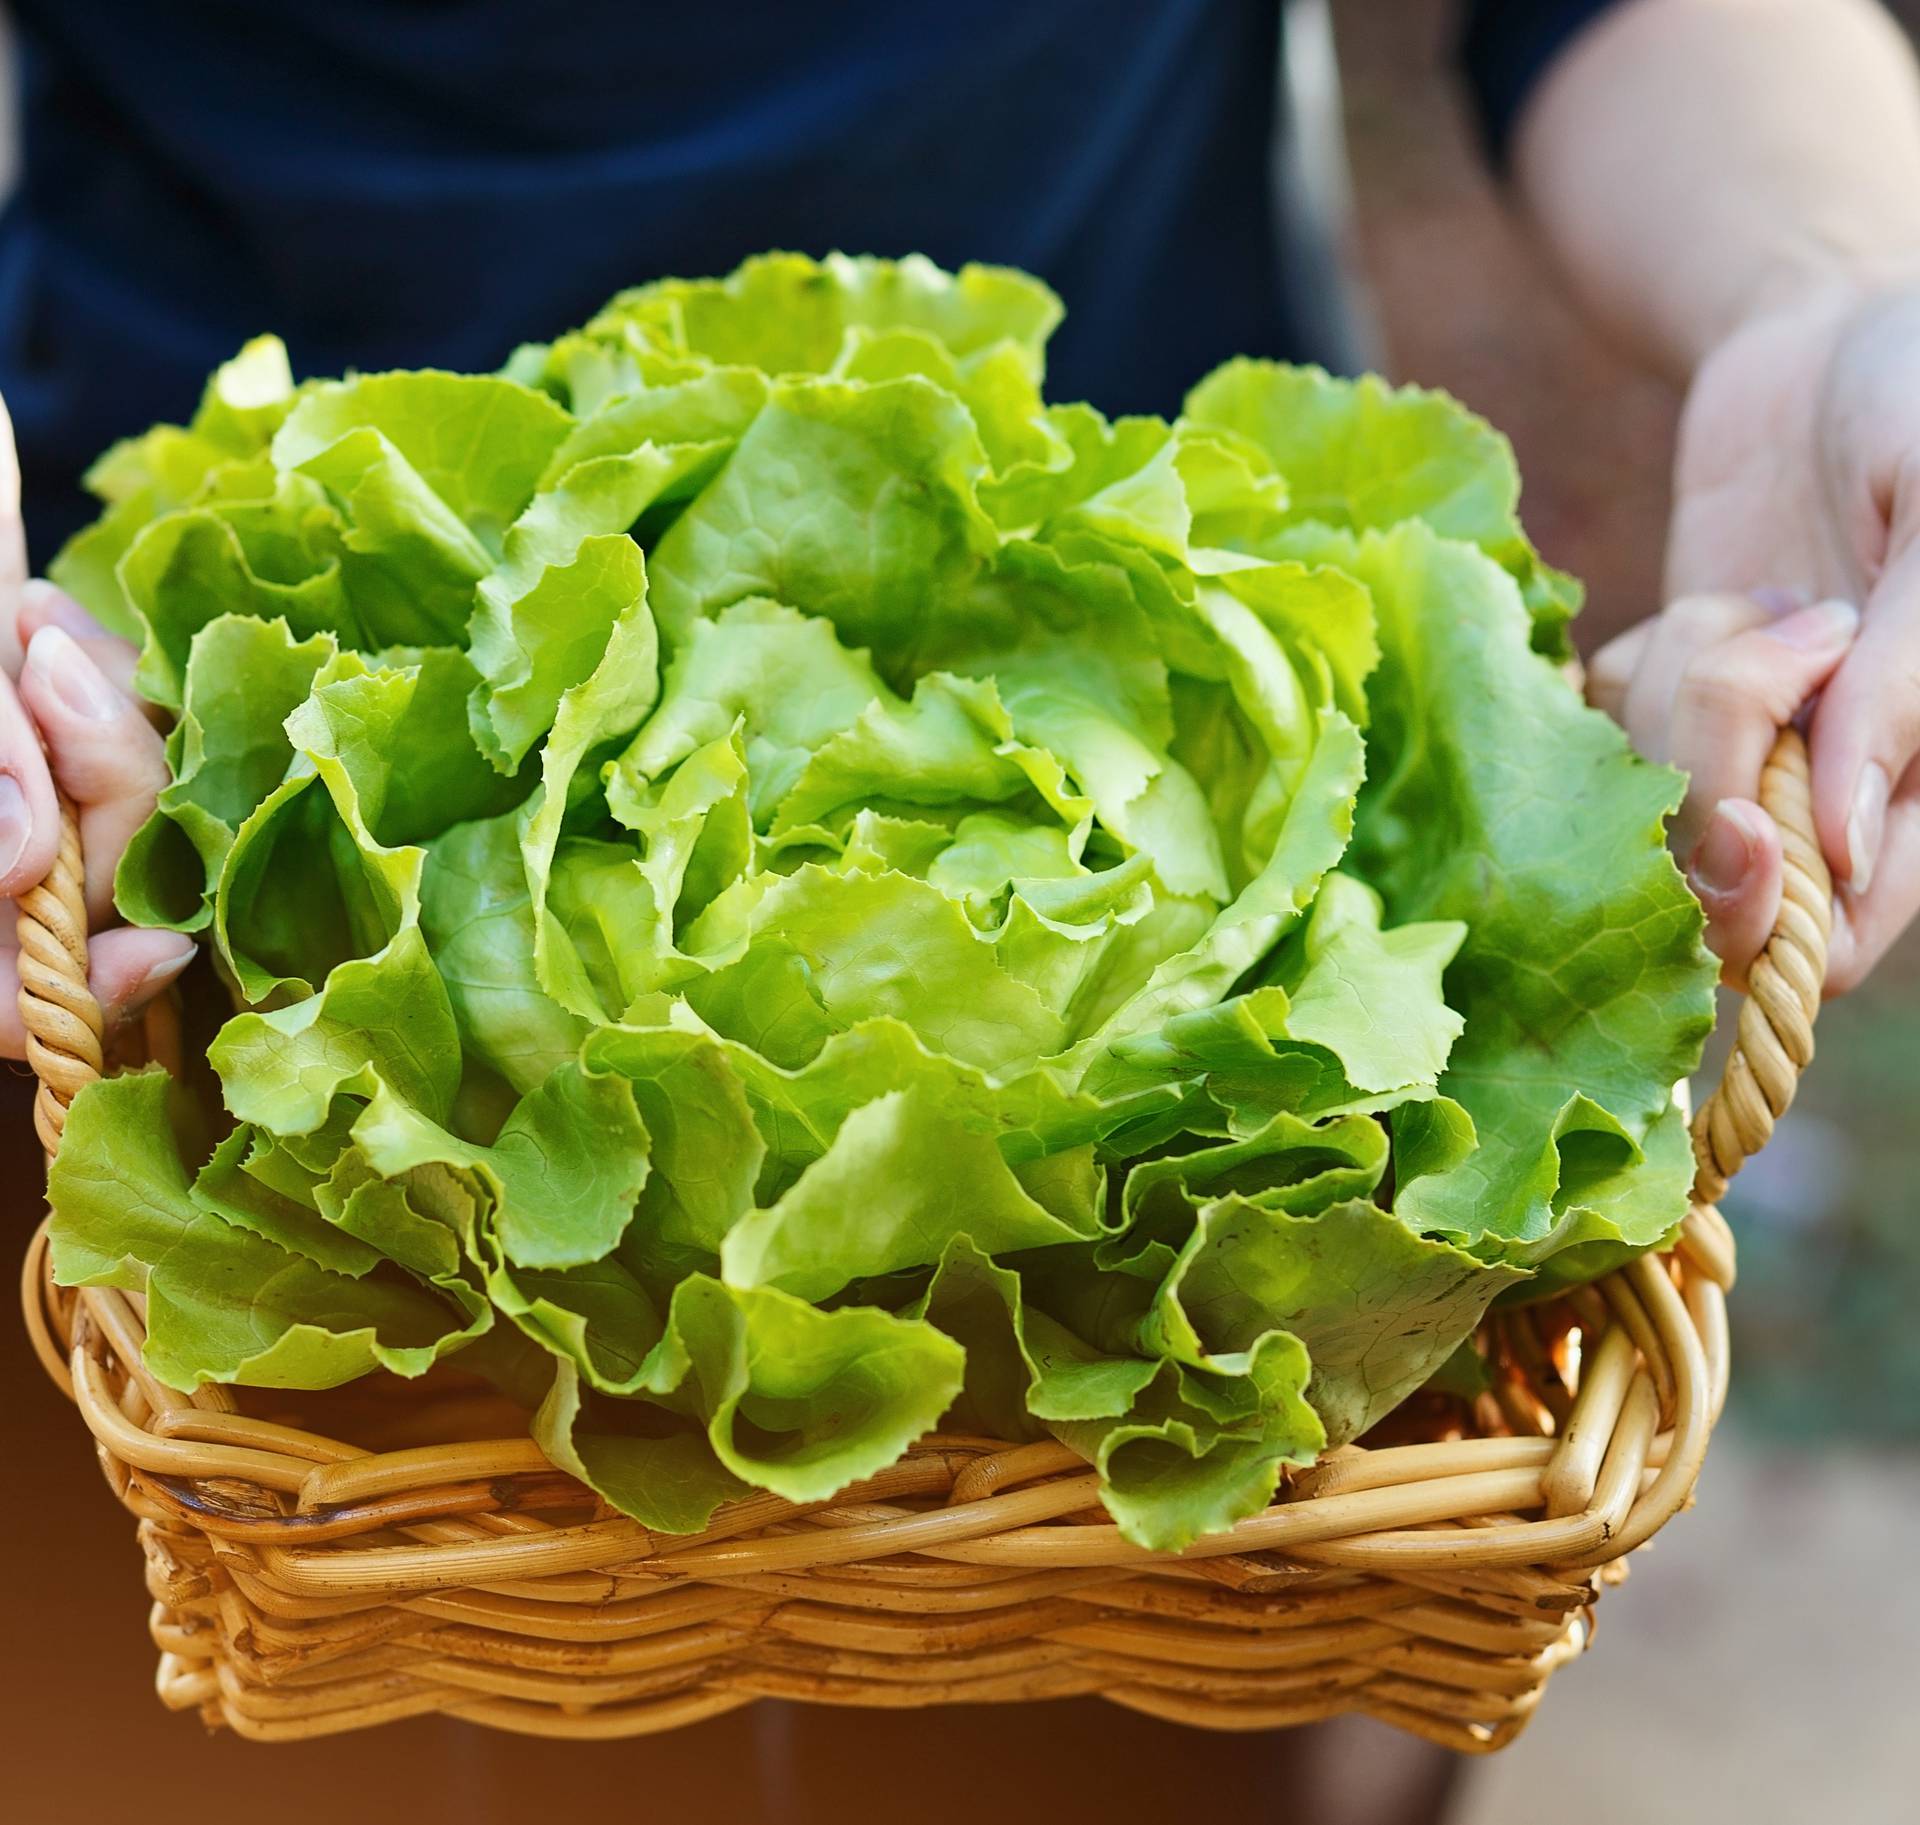 Savjeti kako da svježi peršin i salata prežive dulje u frižideru